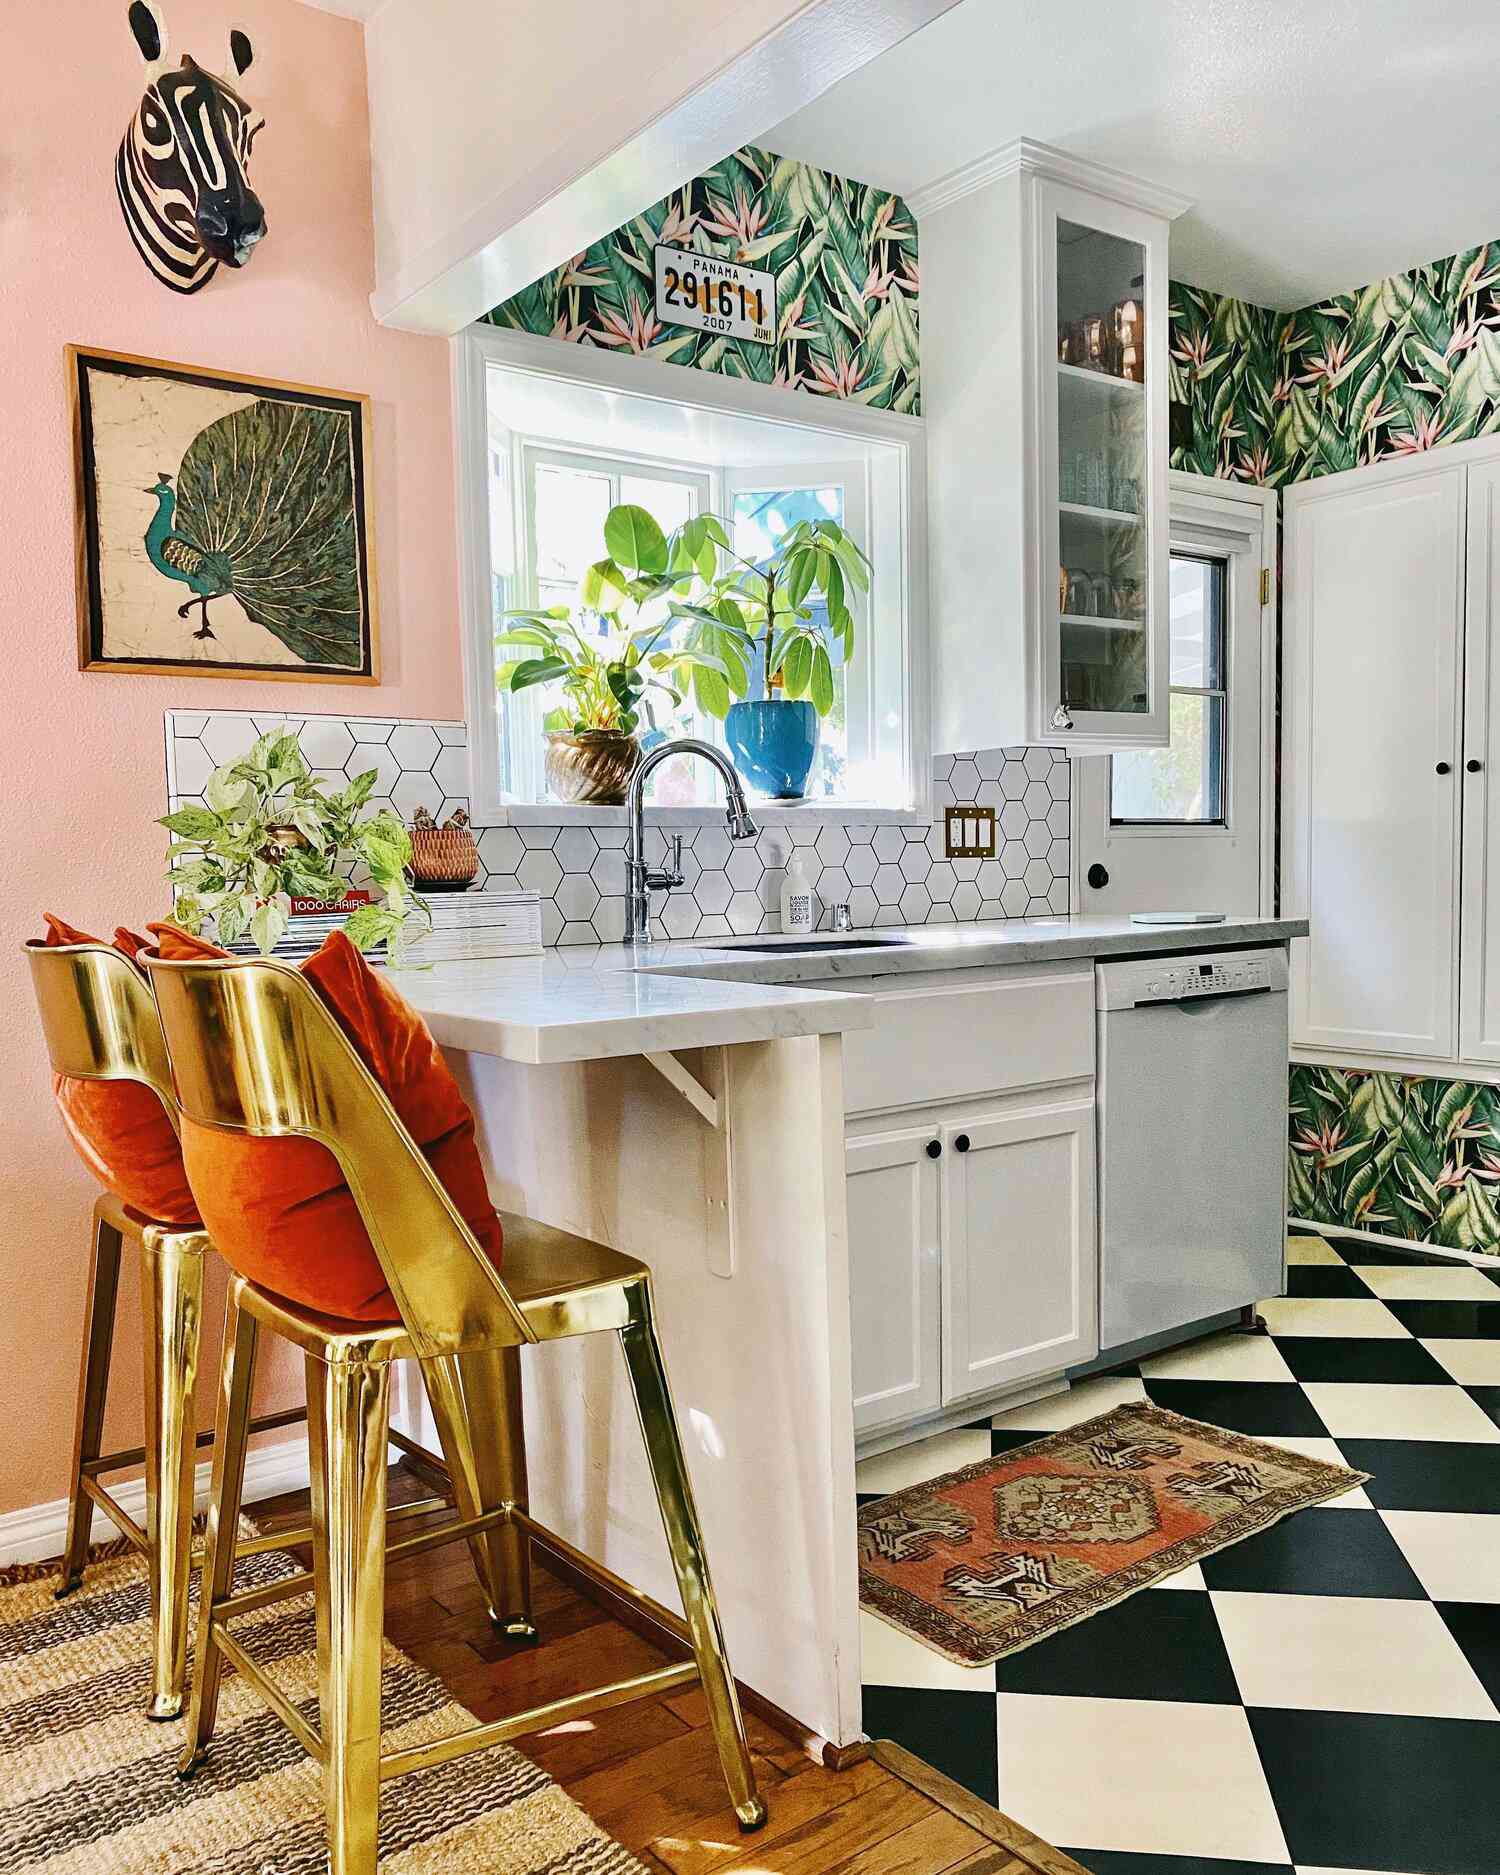 Eklektische kleine Küche mit Blattmustertapete, sechseckiger Fliesenspiegel, schwarz-weiß karierter Boden.